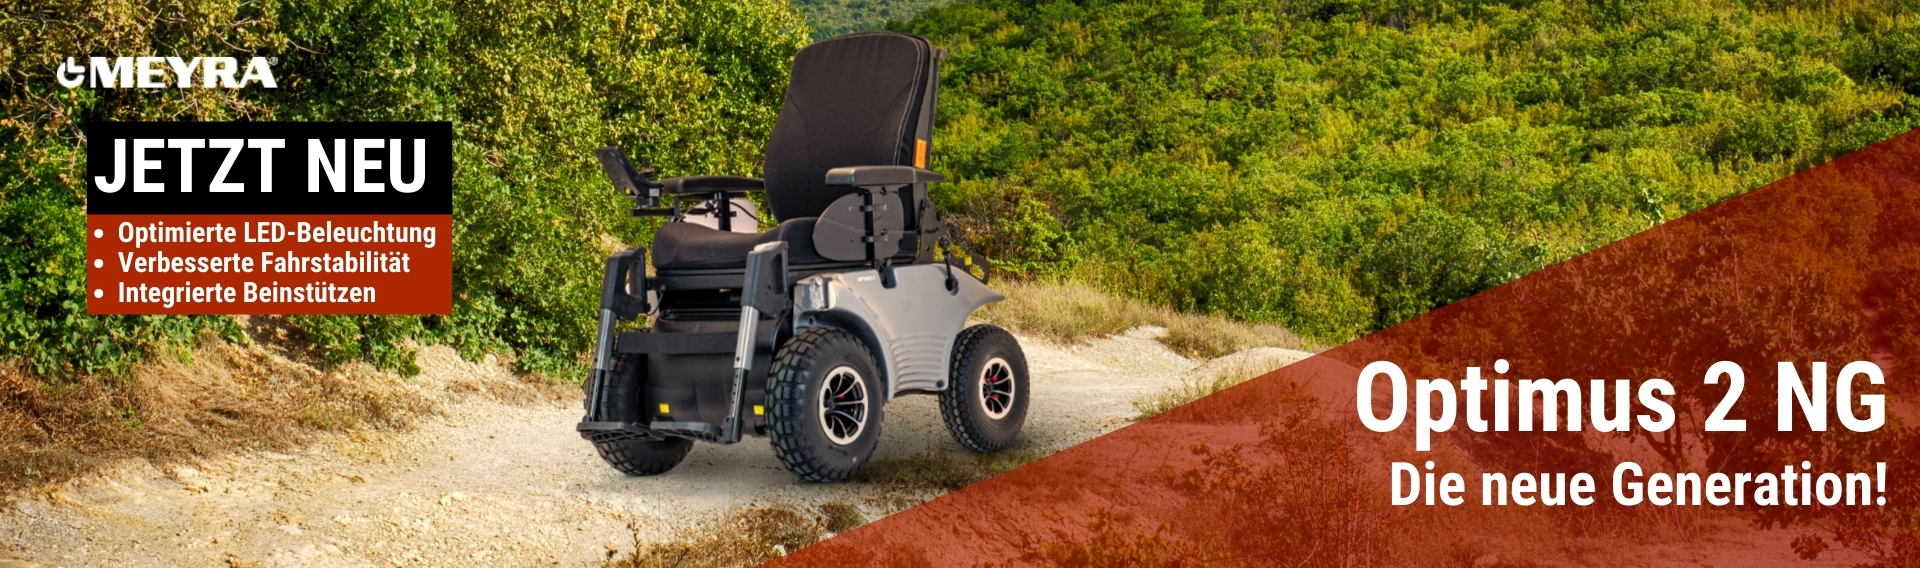 Der Meyra Optimus 2 bietet mit der direkten Lenkung große Sicherheit und Zuverlässigkeit beim Fahren im Außenbereich. Durch Einzelradfederung und hohe Steigfähigkeit ideal für unwegsames Gelände.        